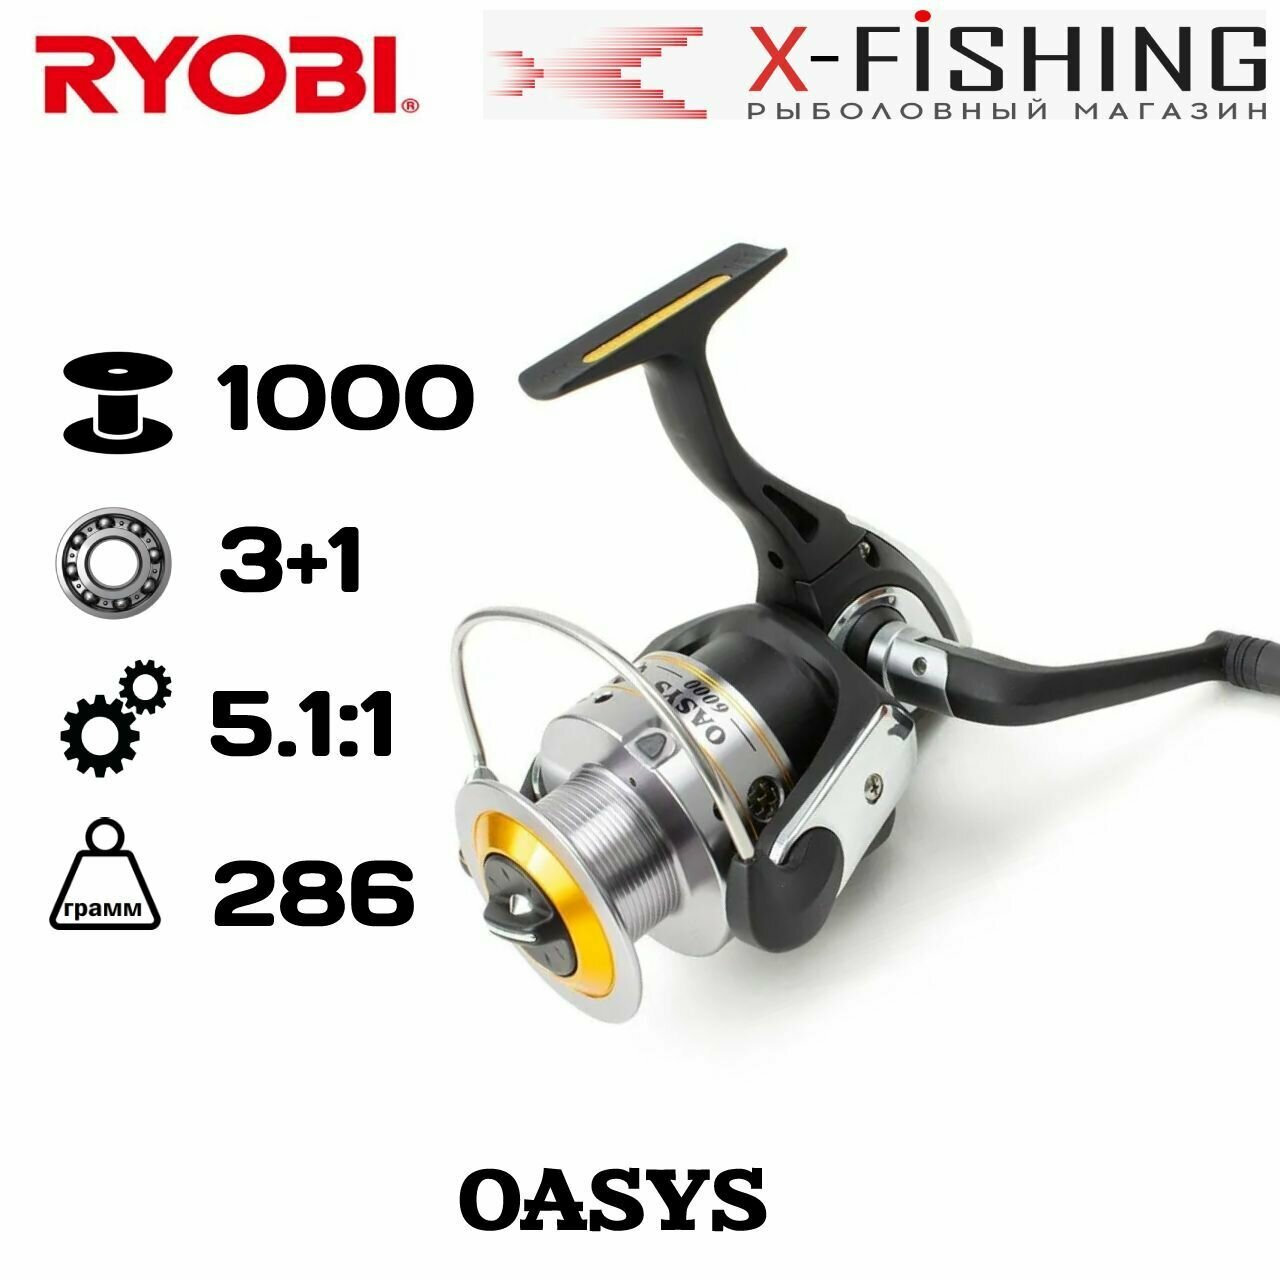 Катушка для рыбалки Ryobi Oasys 1000